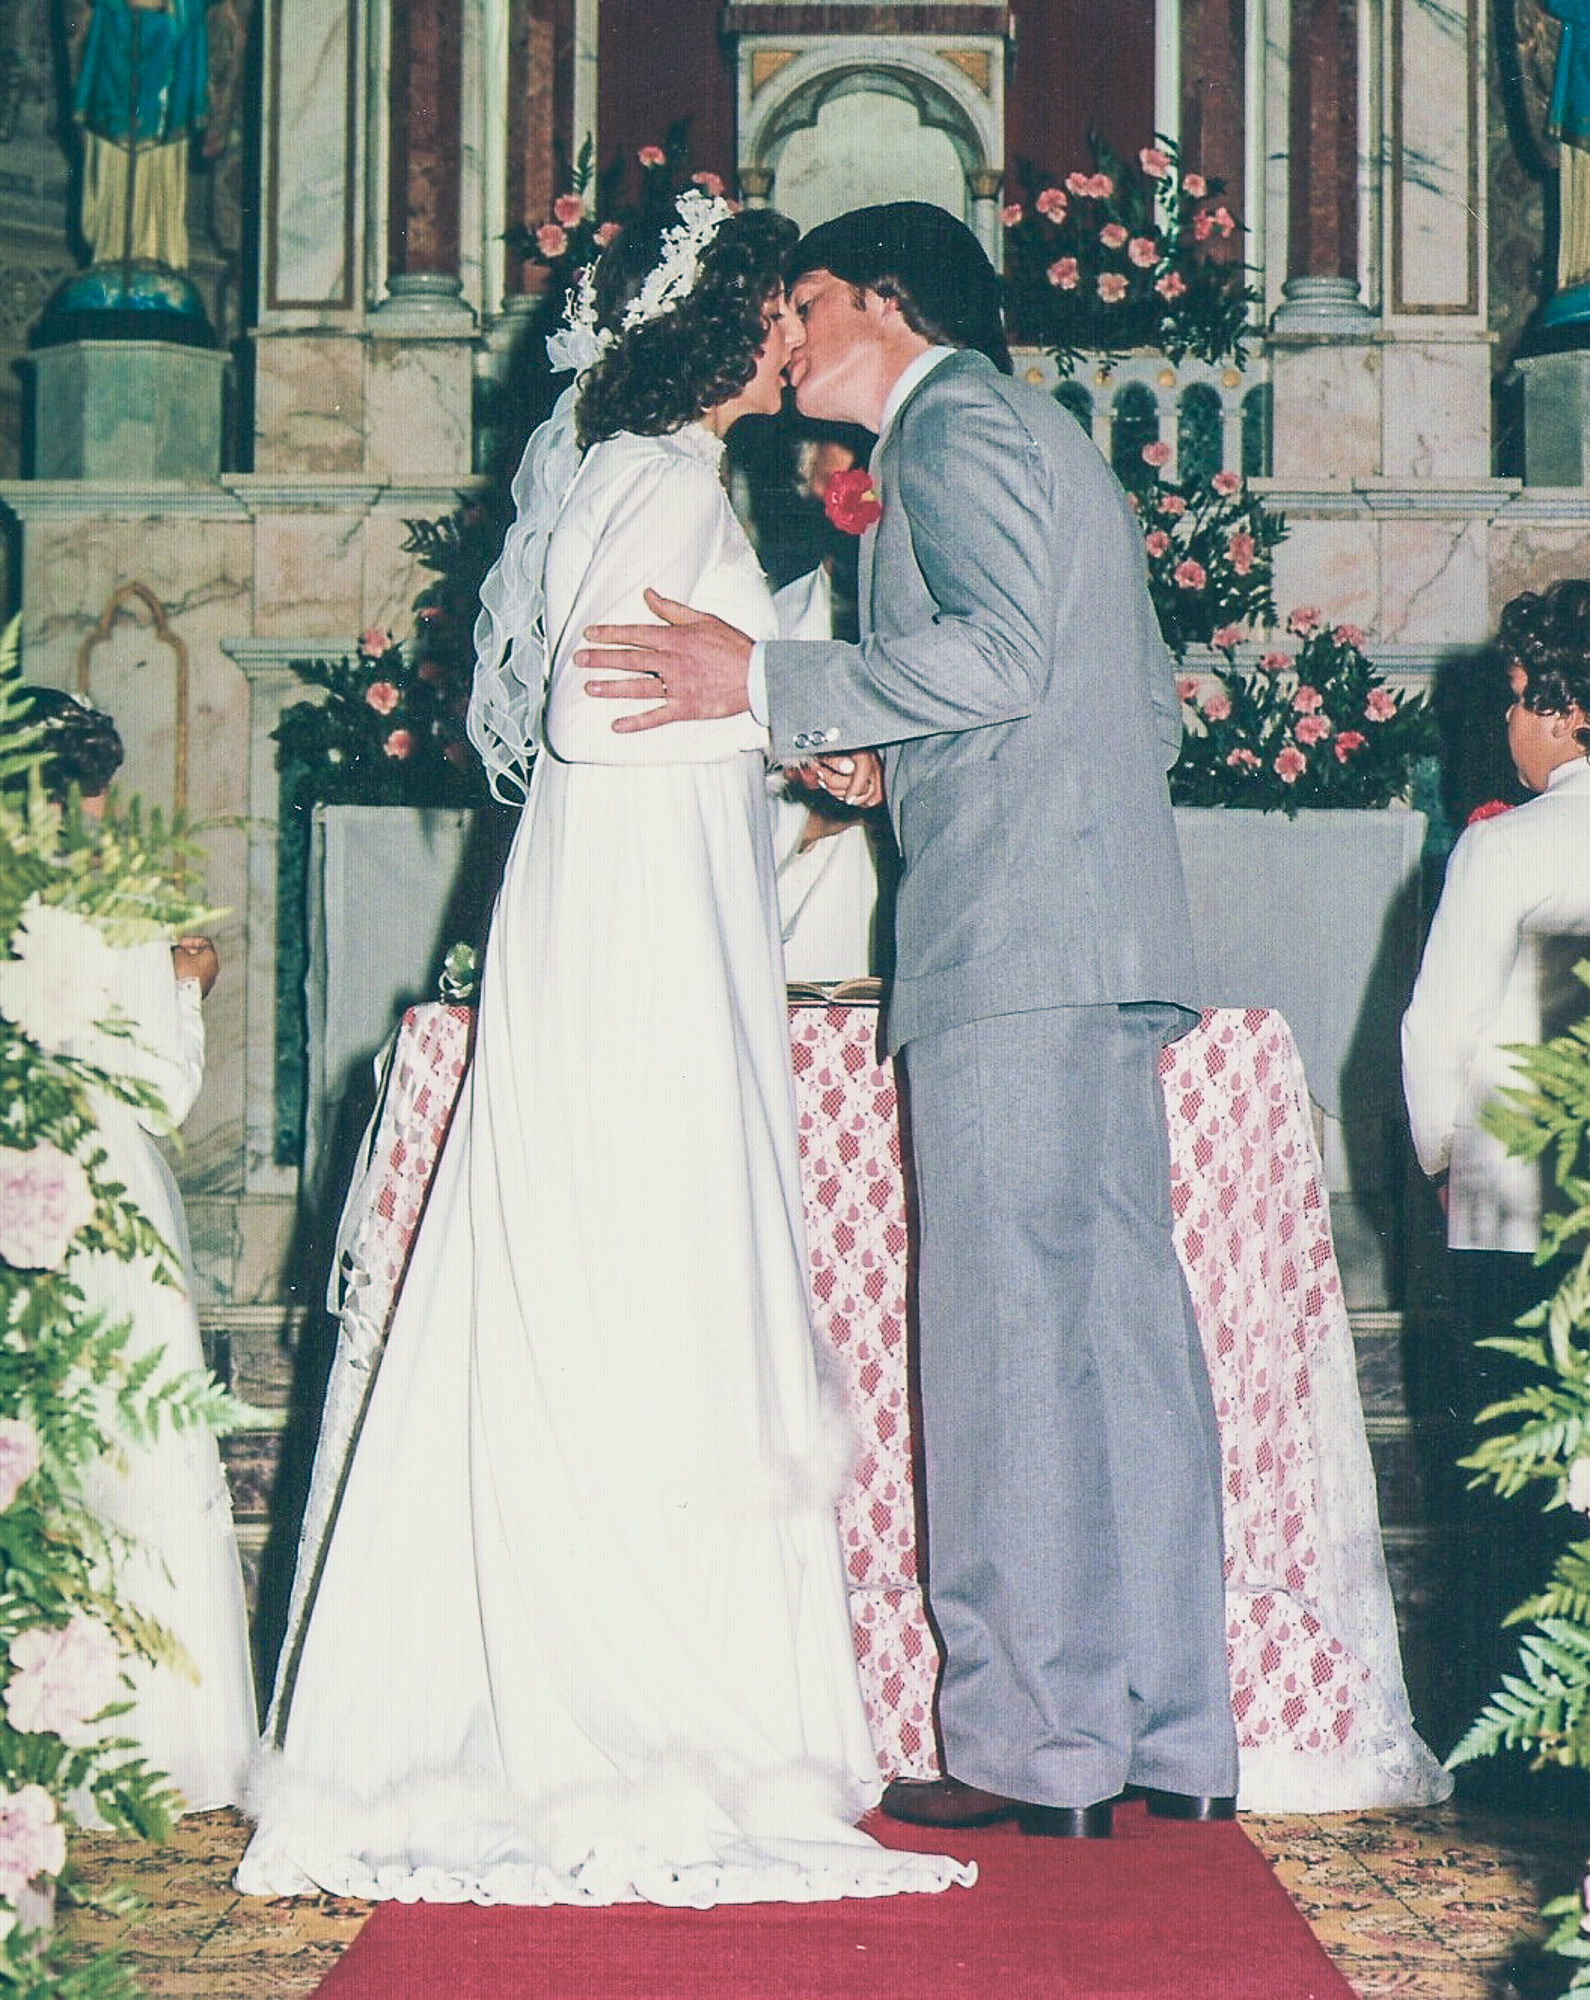 Foto: Arquivo pessoal. Casamento realizado no início dos anos 80 em Campo Largo/PR.